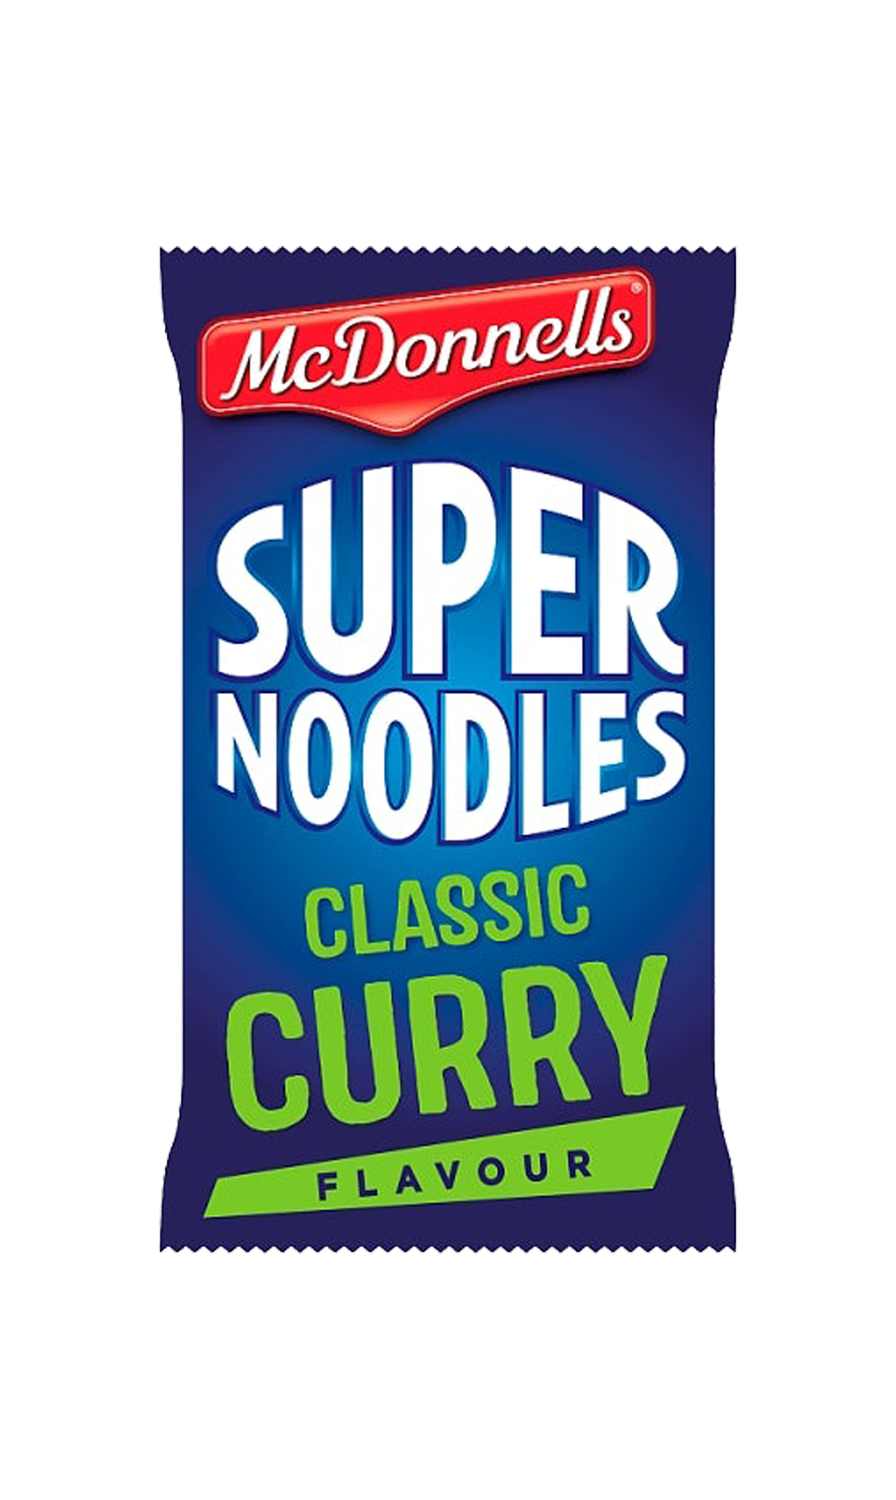 McDonnells Super Noodles Classic Curry flavour 100g